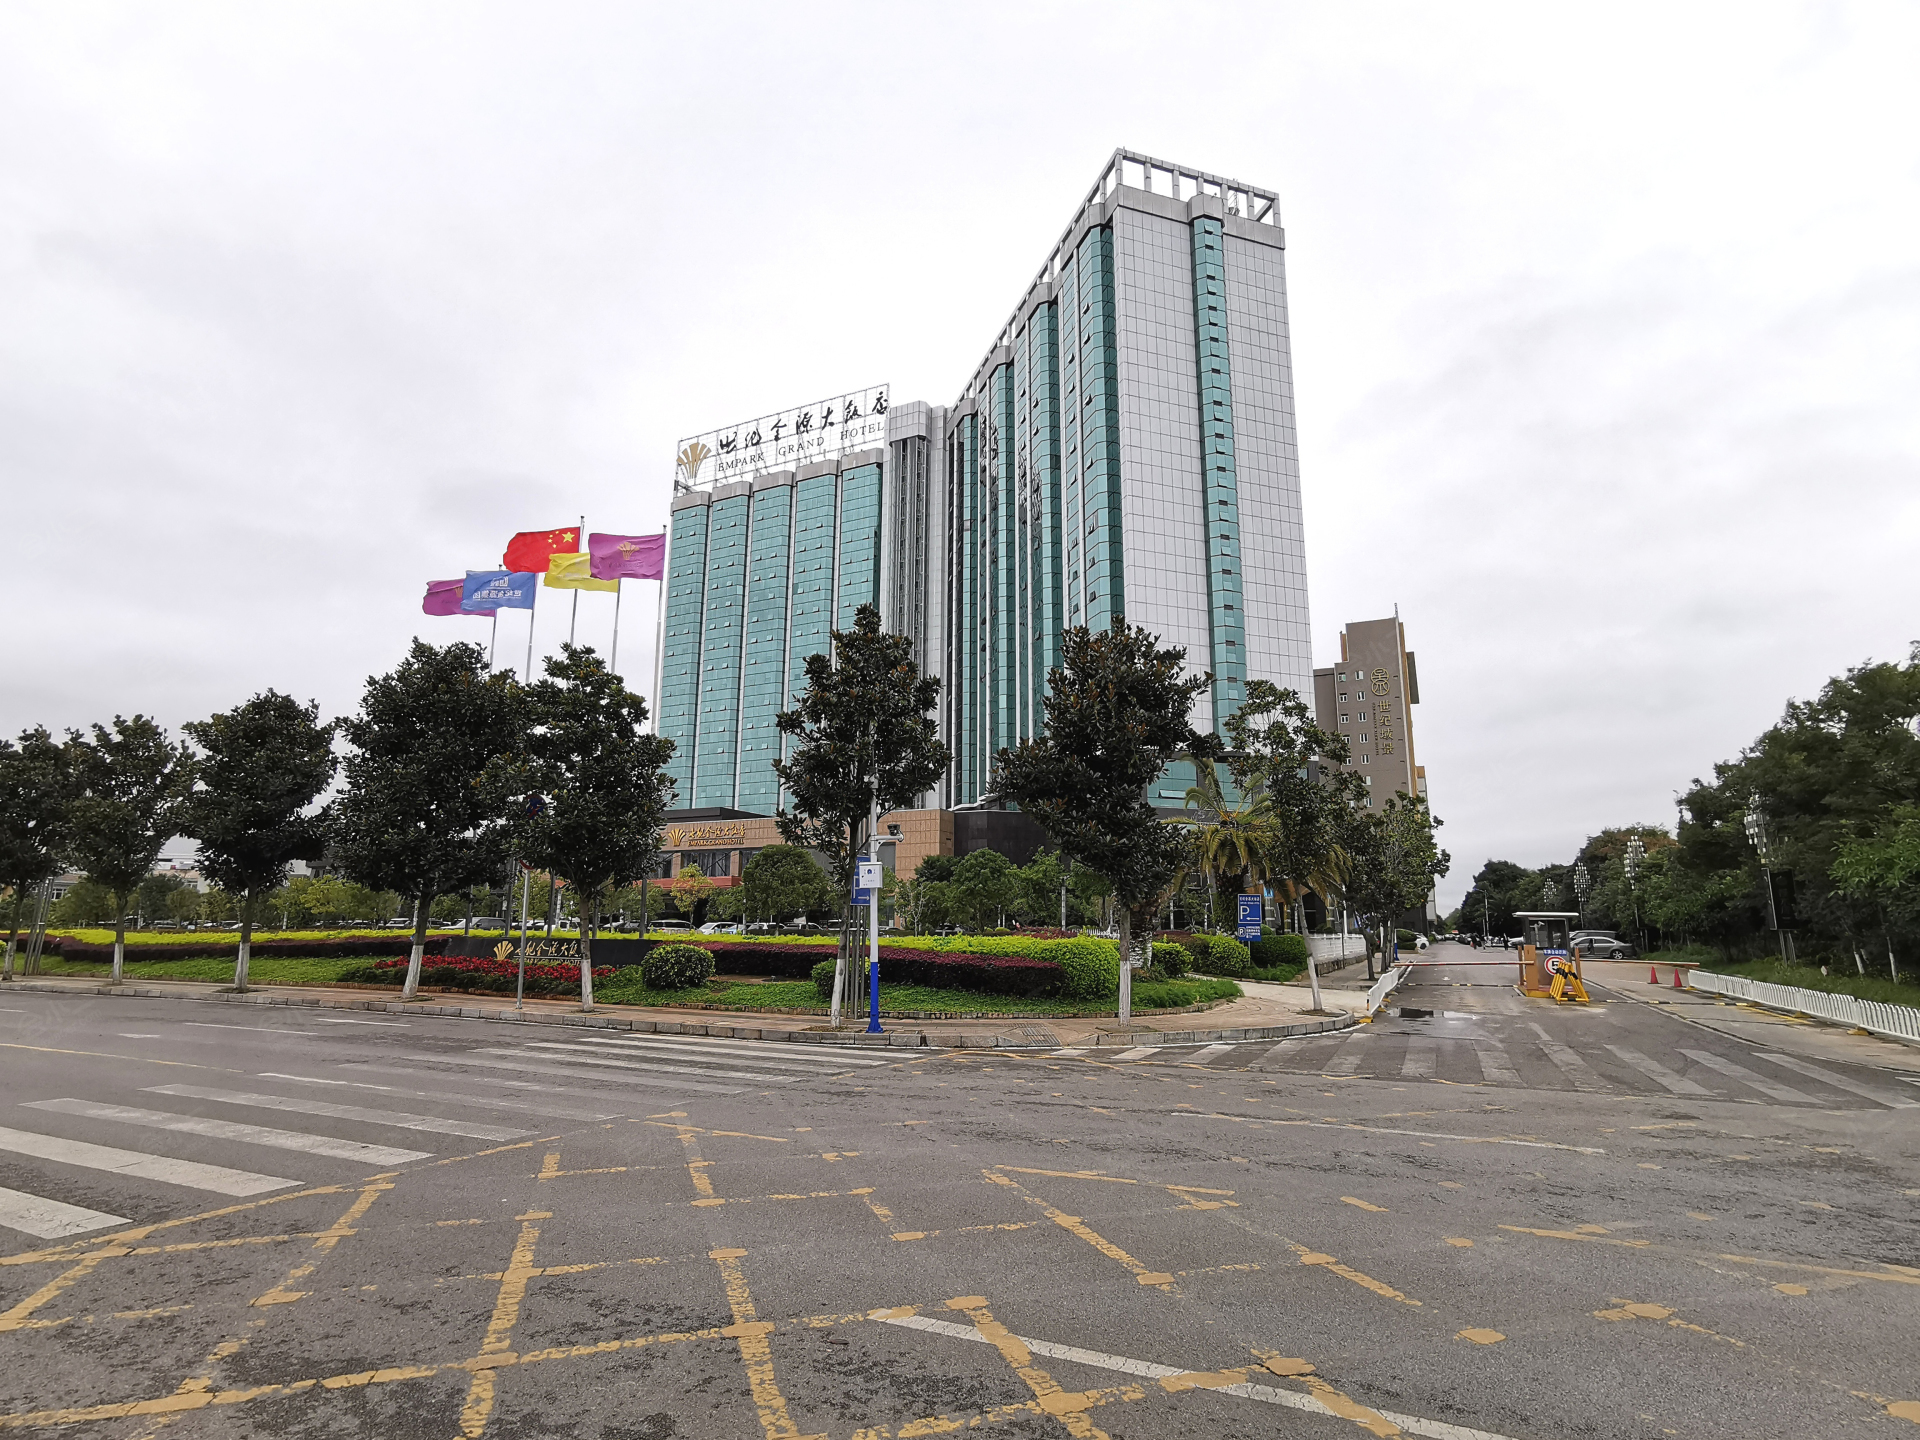 长沙长沙世纪金源大饭店 (Empark Grand Changsha Hotel) - Agoda 网上最低价格保证，即时订房服务